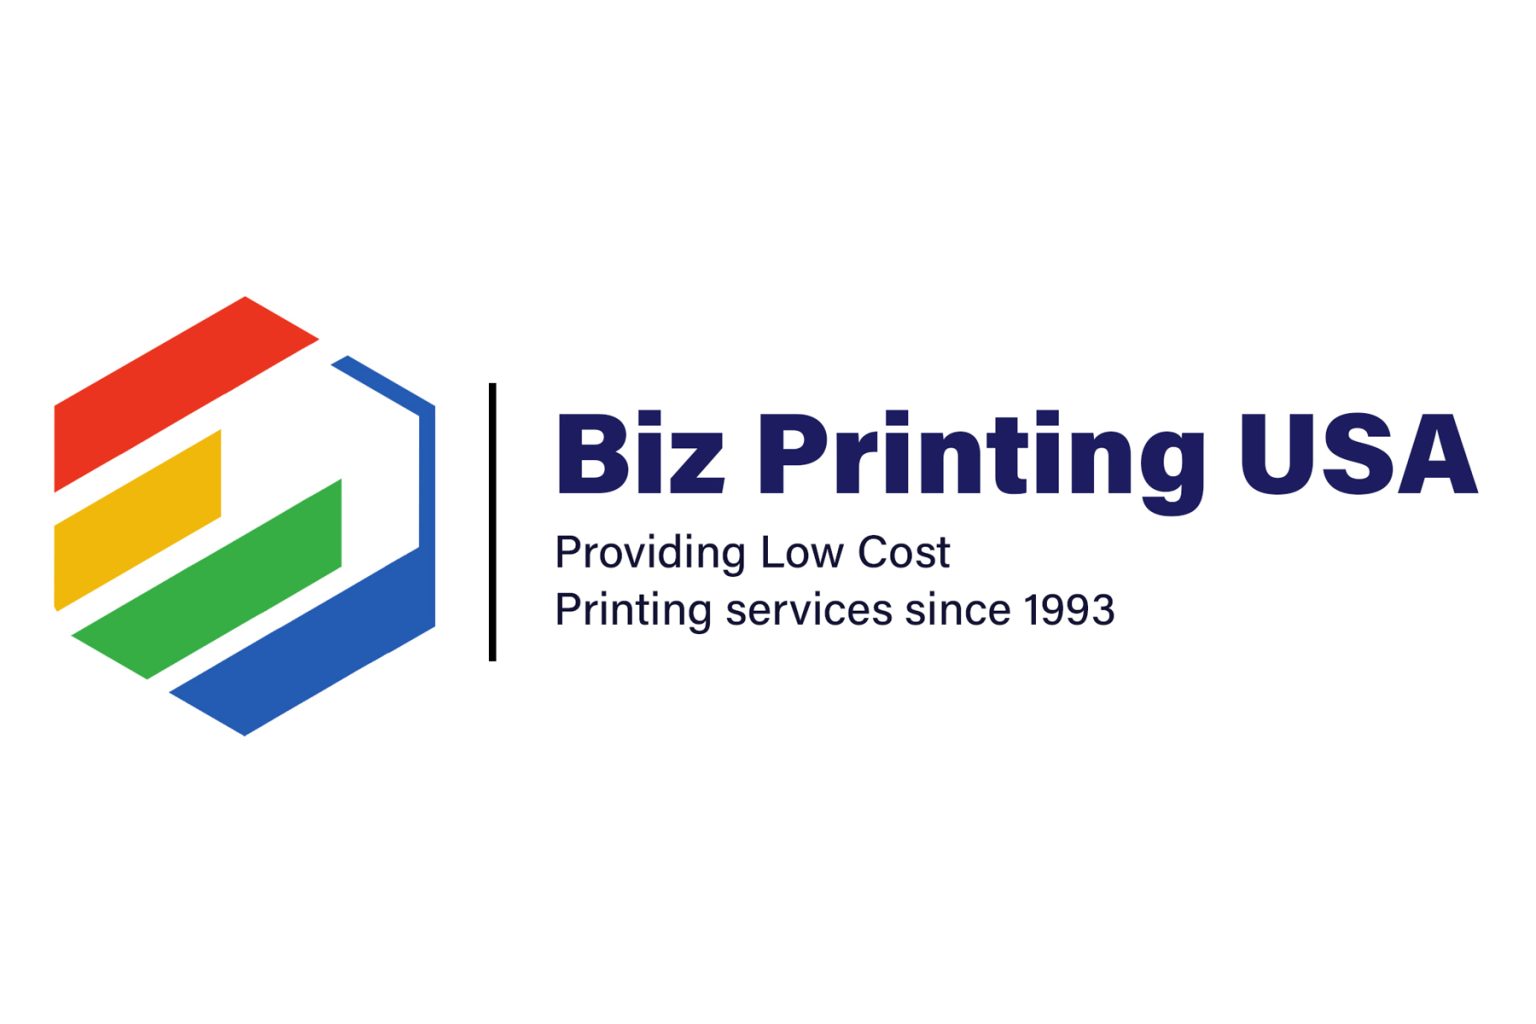 Biz Printing USA